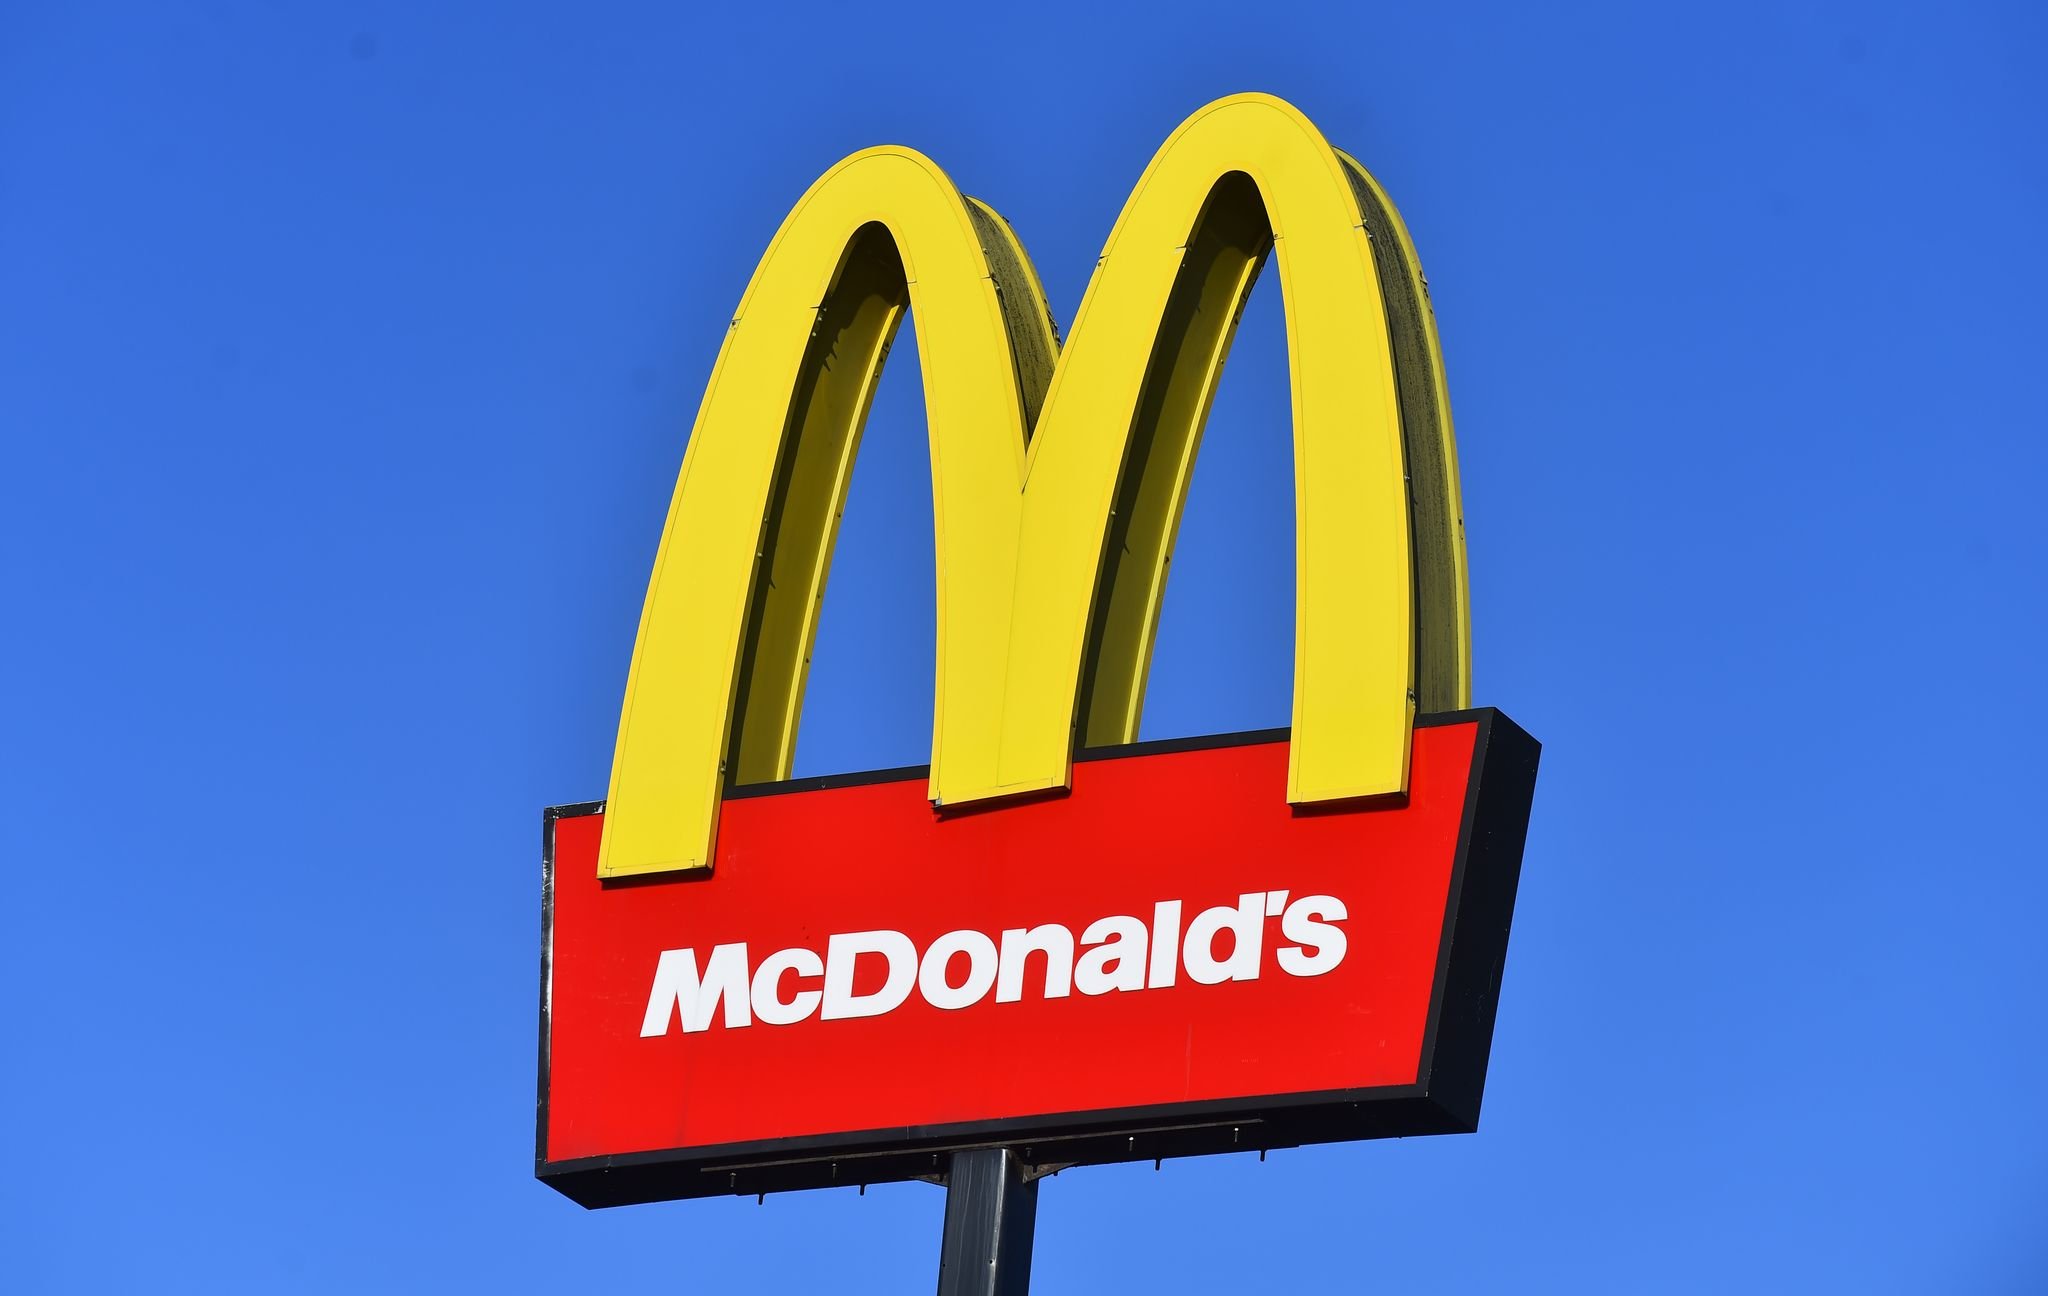 Das Markenzeichen von McDonald's wurde am 13. November 2020 in Staffordshire erfasst. | Quelle: Getty Images